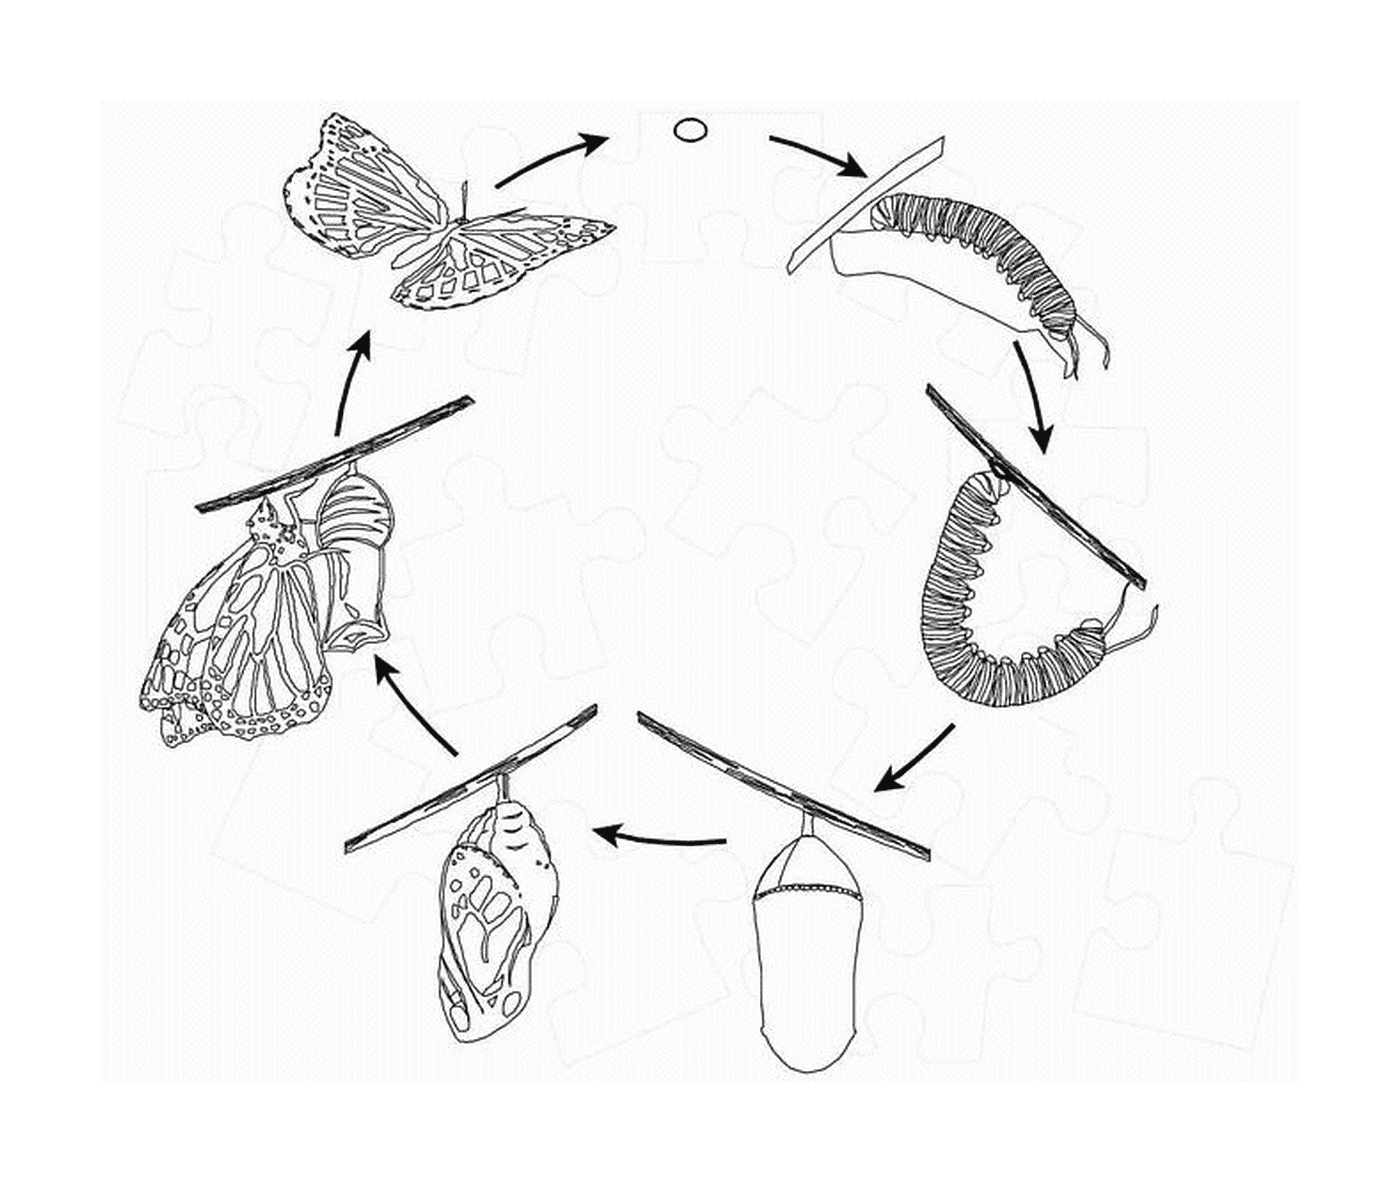  ciclo di vita delle farfalle 